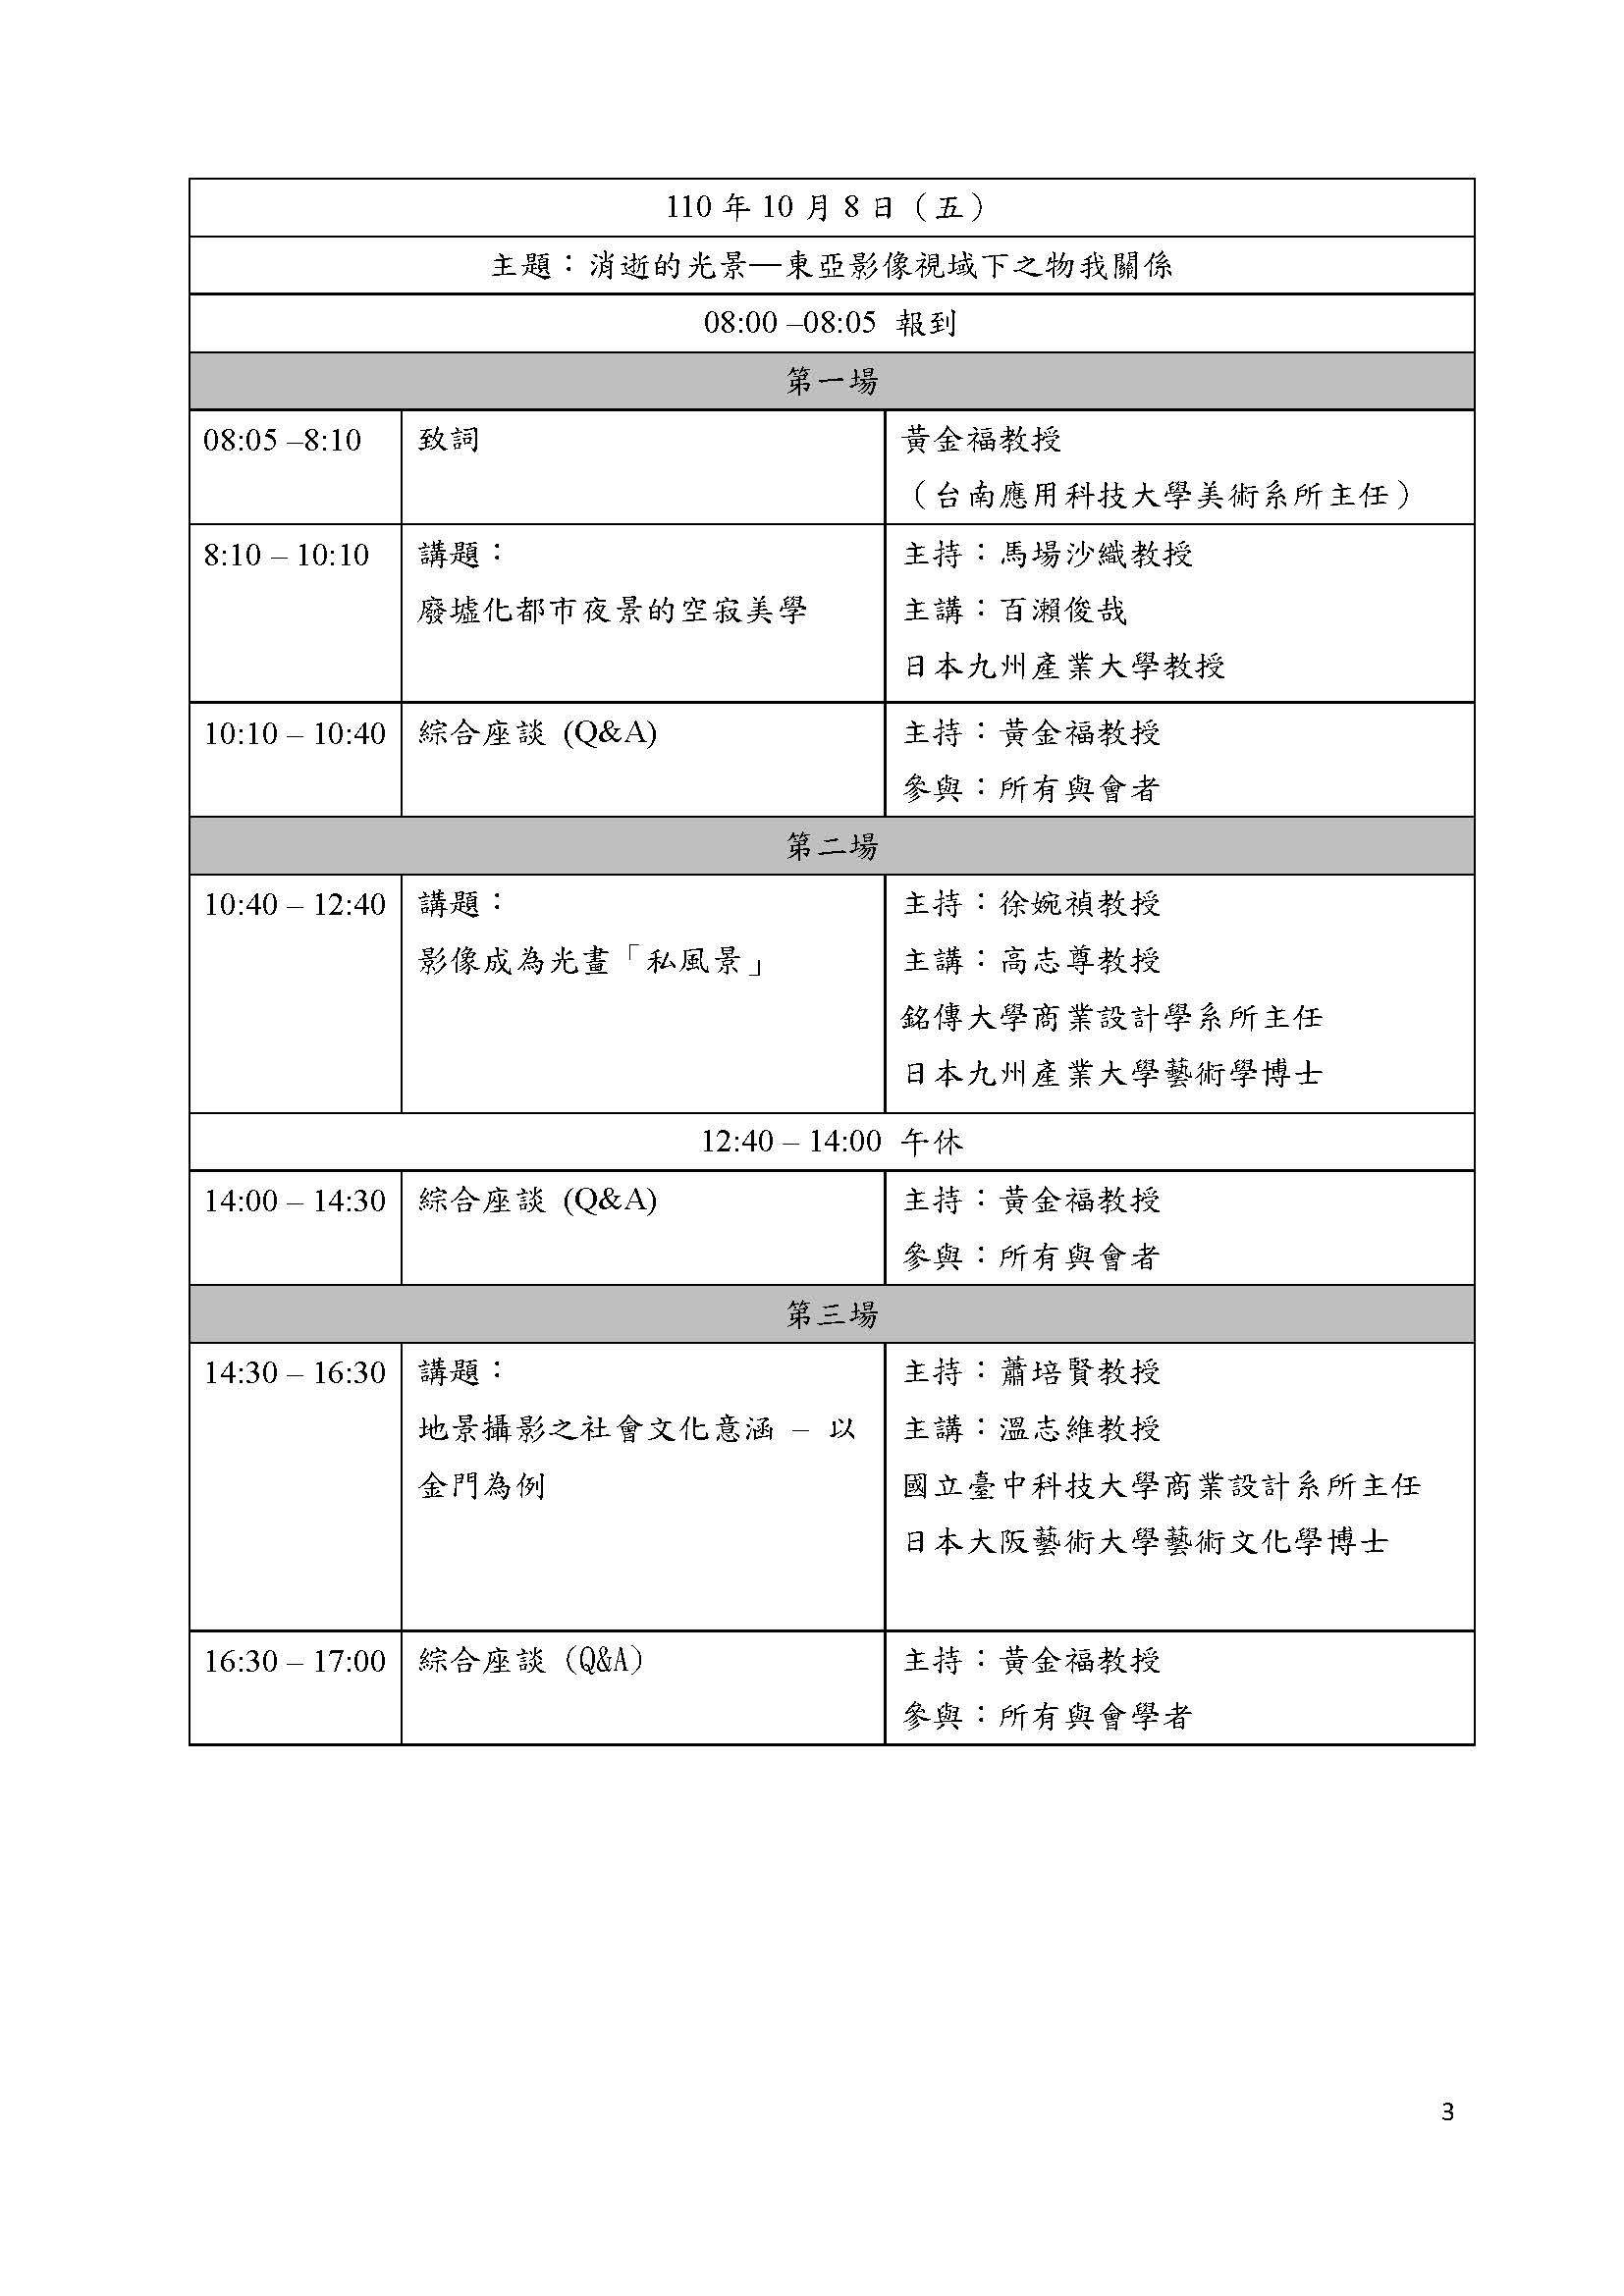 南應大美術系2021台日研討會議程表1008